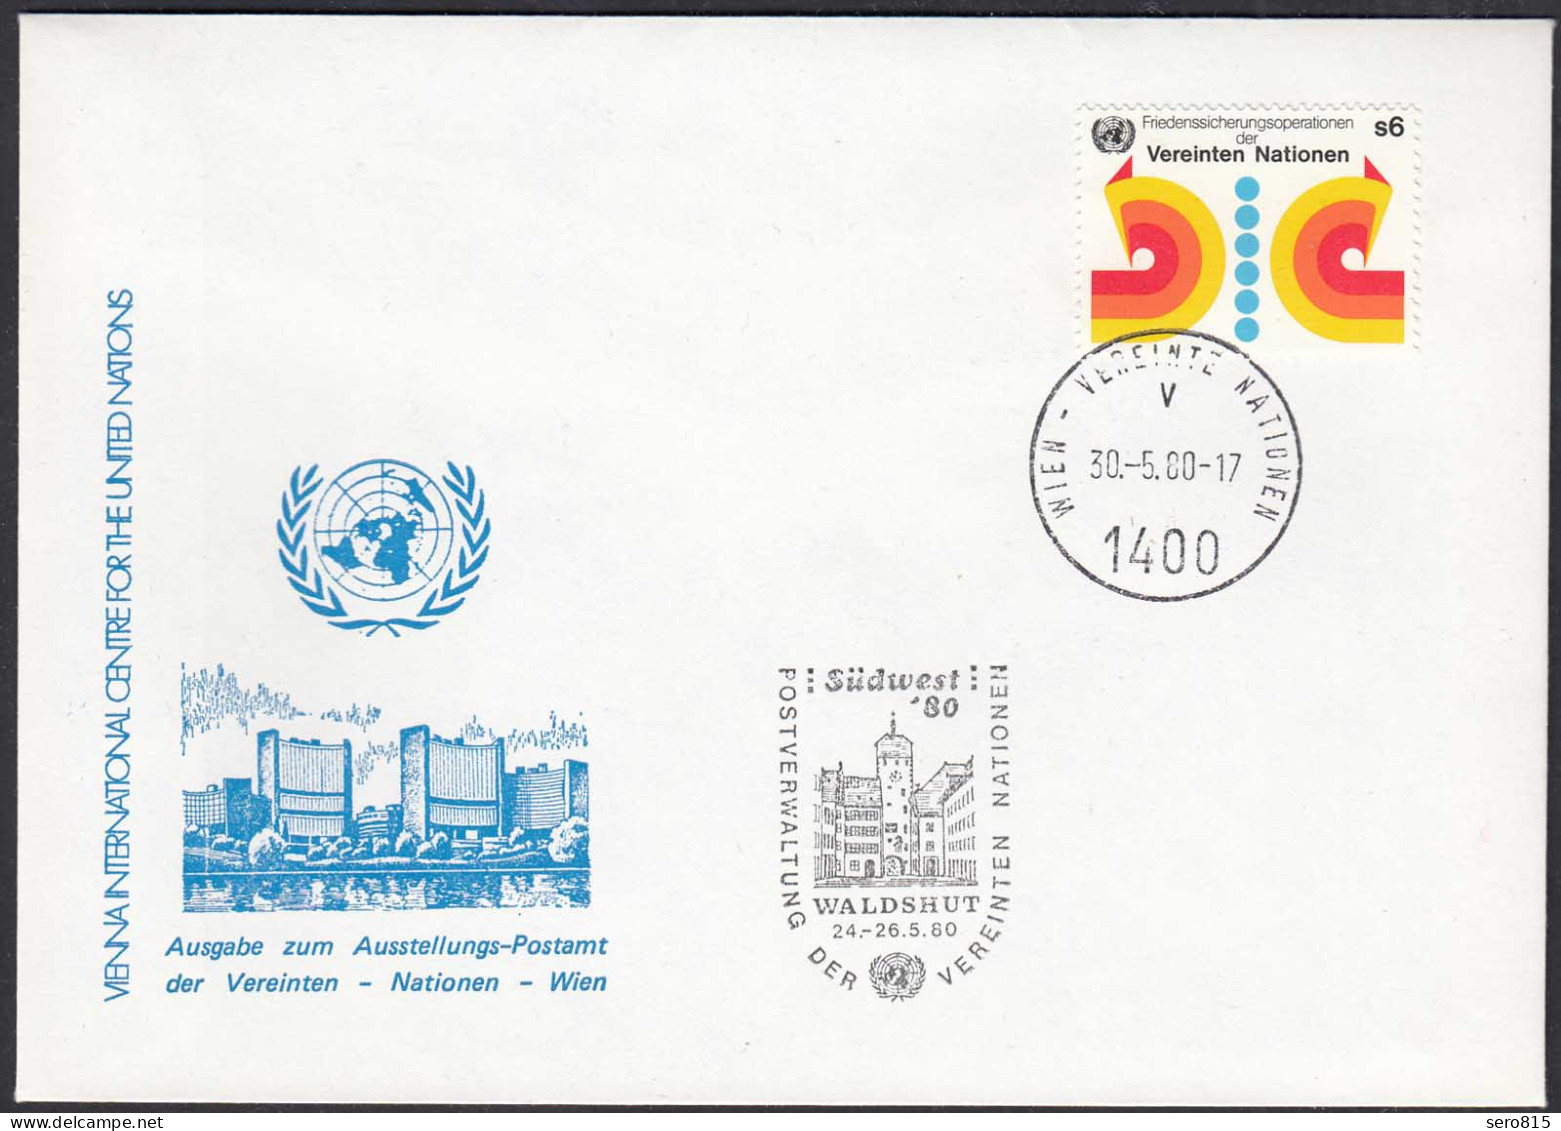 UNO WIEN VIENNA 1980 Waldshut Exhibition Cover 30.5 1980   (87128 - UNO